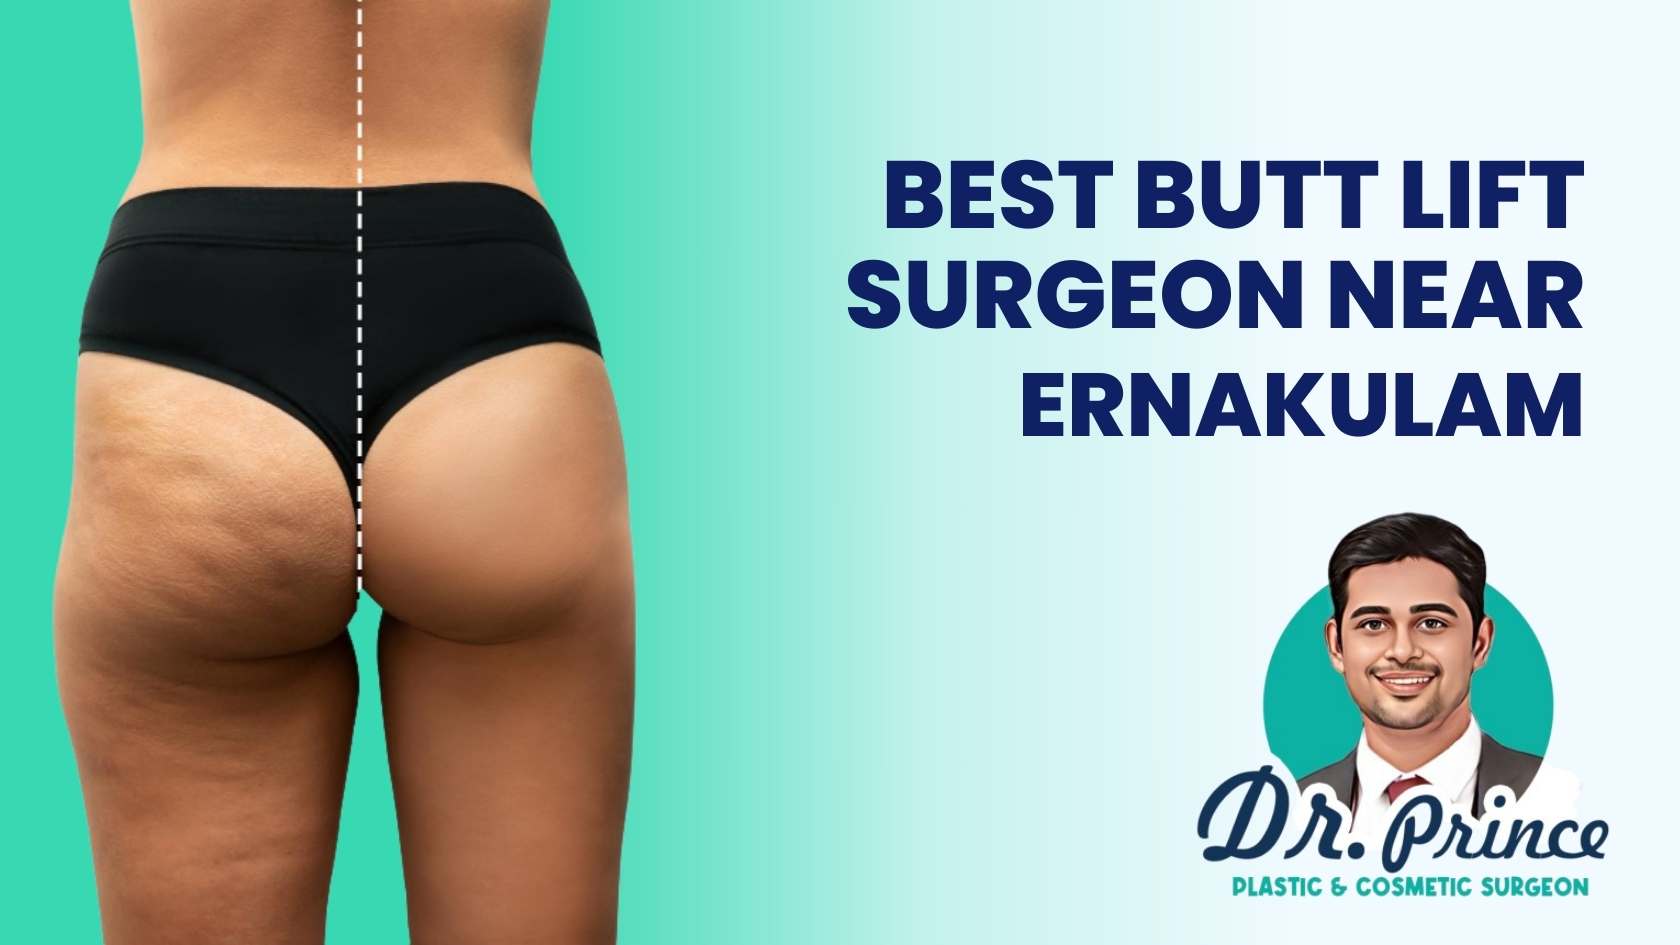 Dr. Prince - Best Butt Lift Surgeon Near Ernakulam